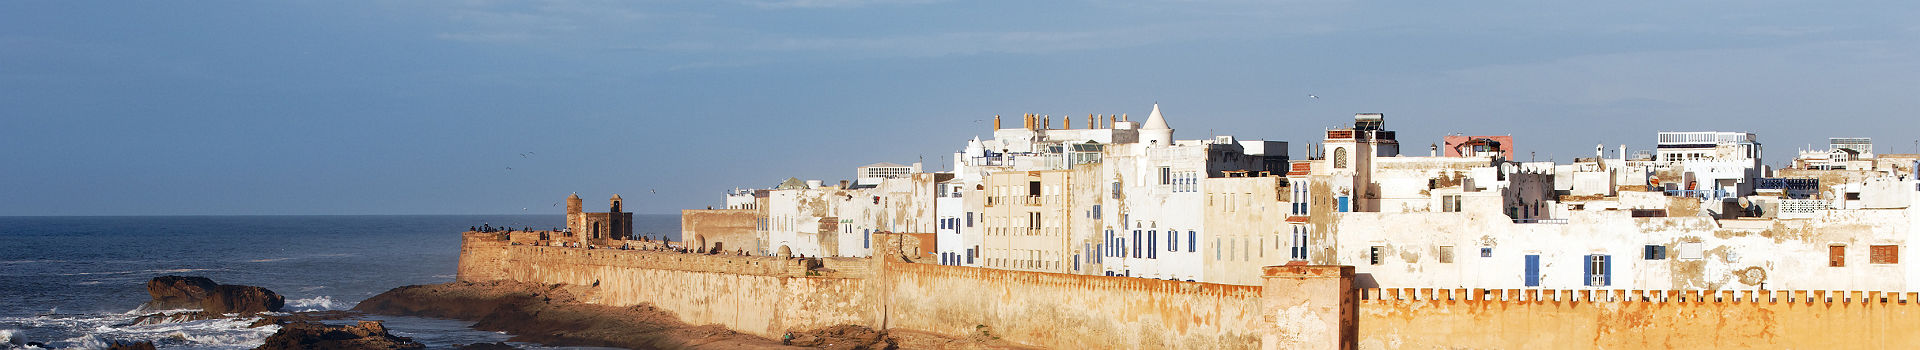 La ville d'Essaouira au Maroc